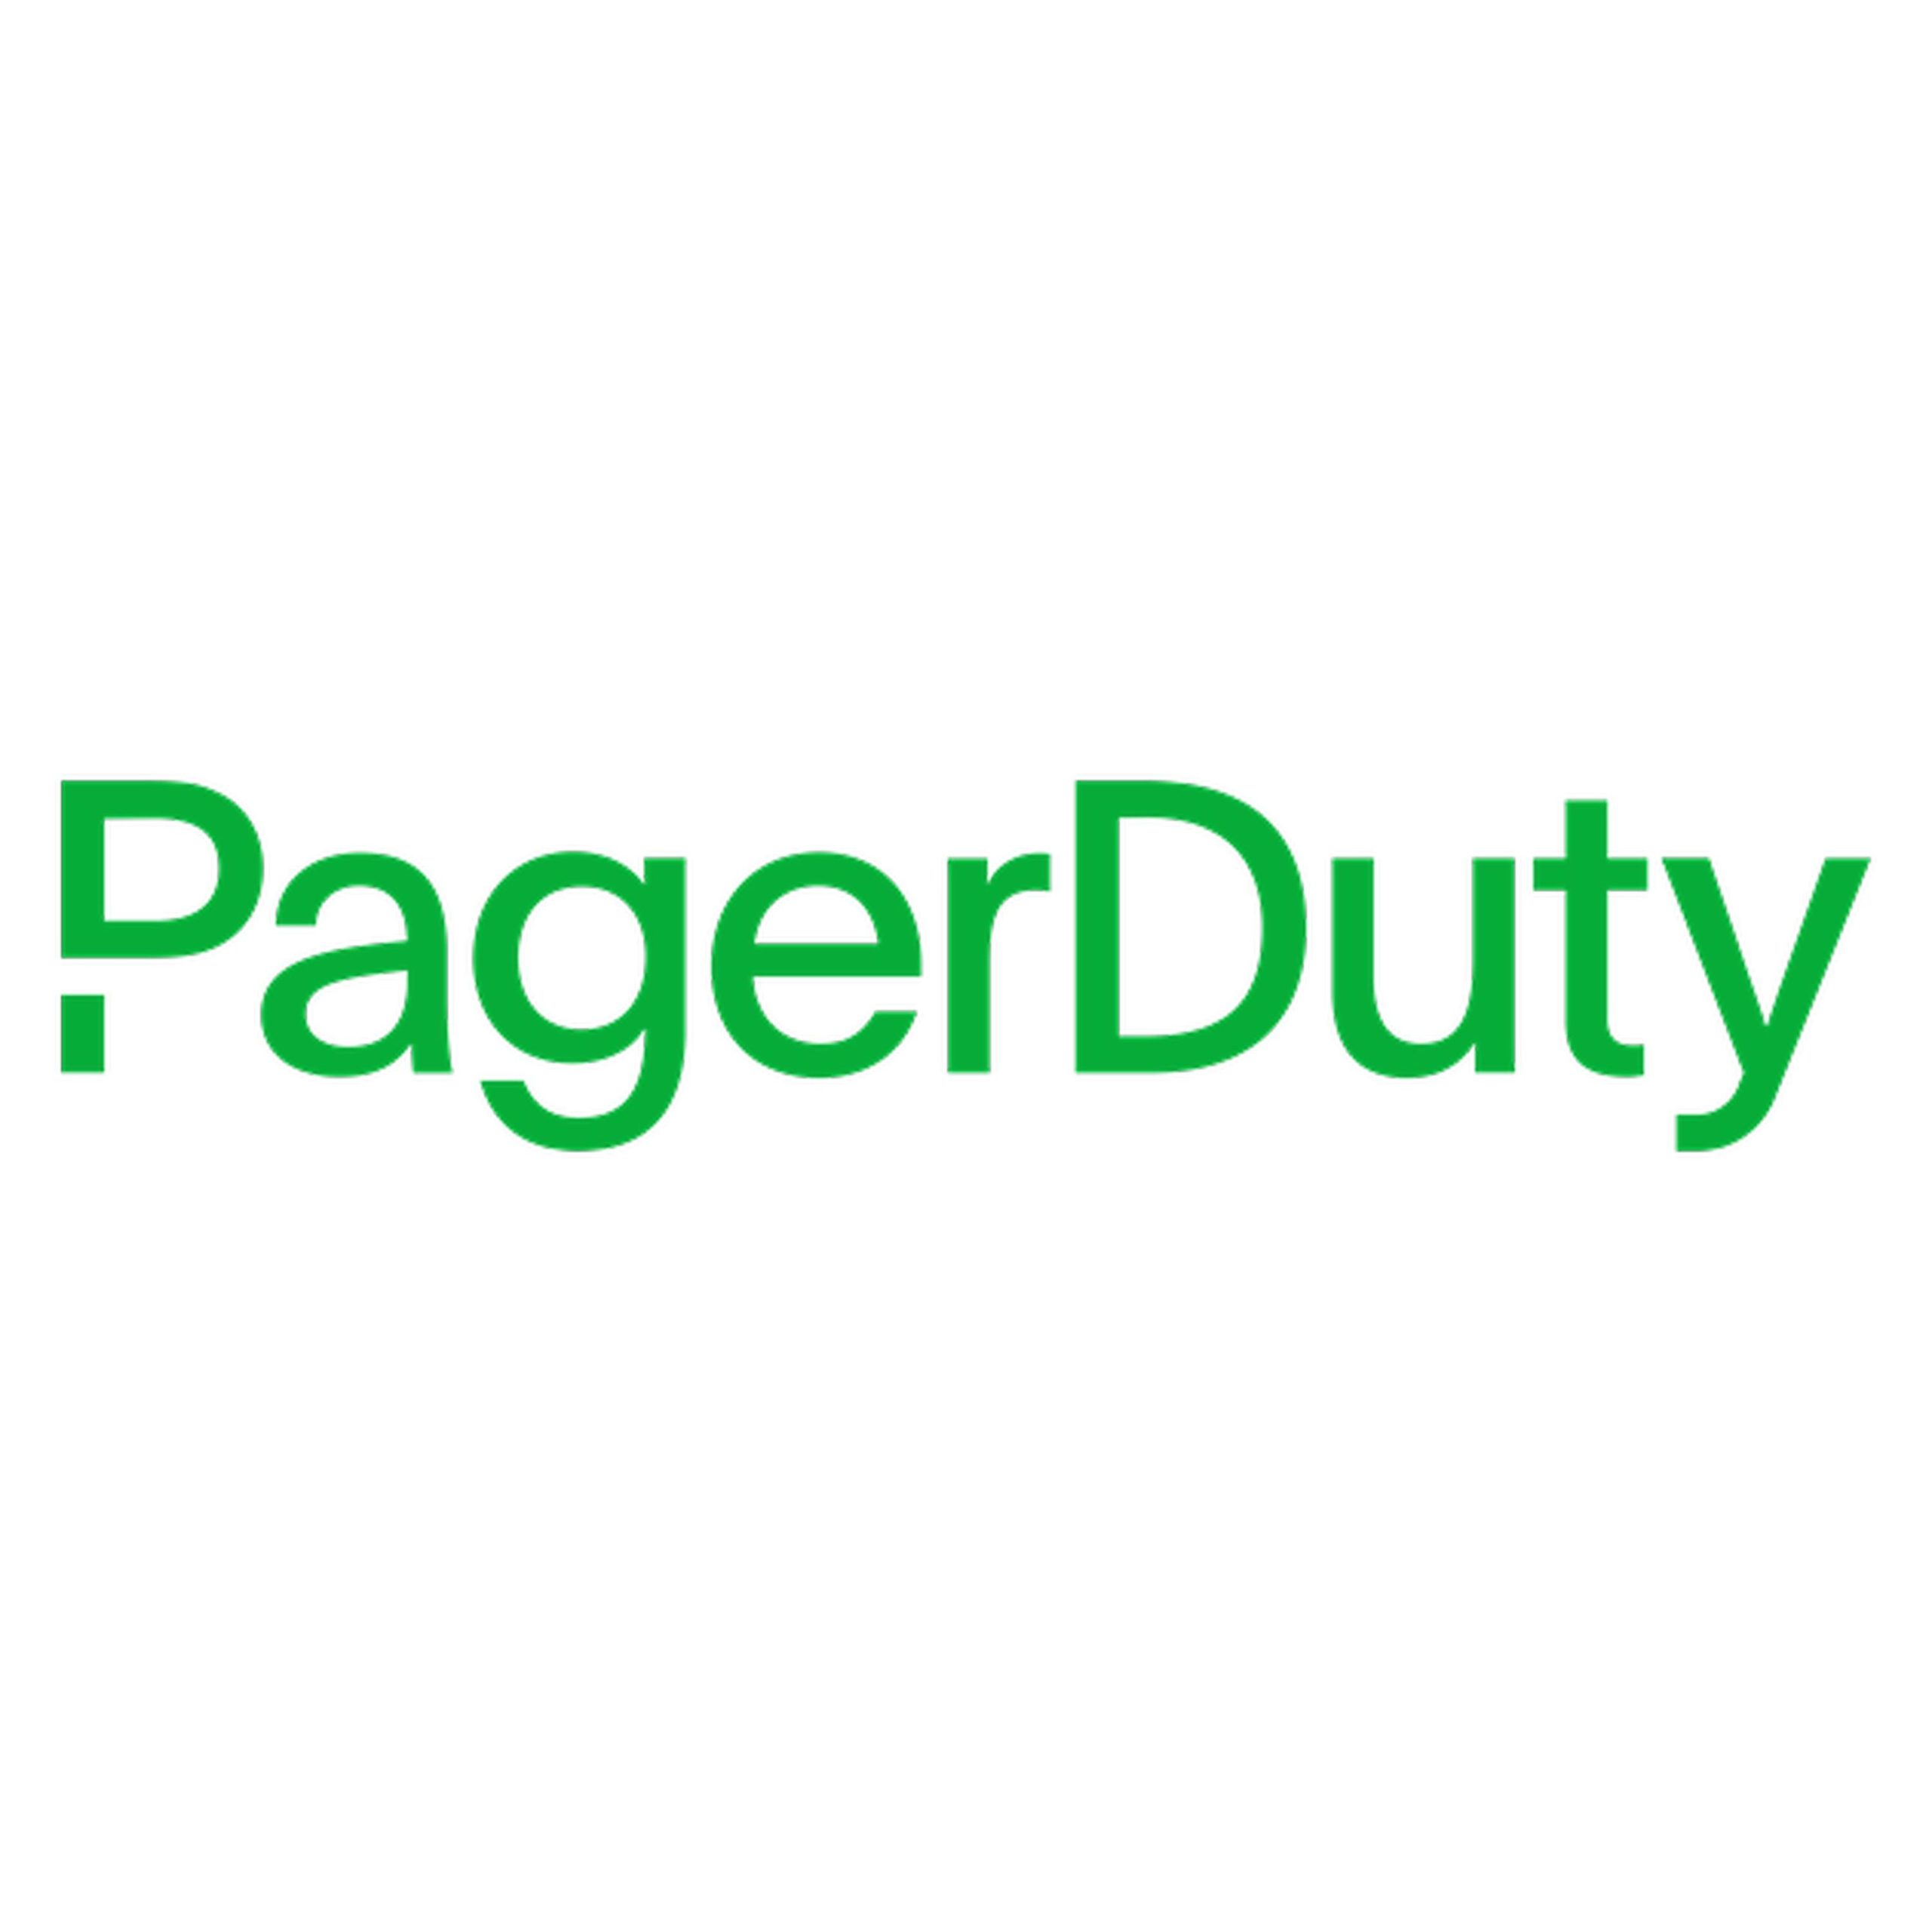 インシデント管理ソリューション PagerDuty